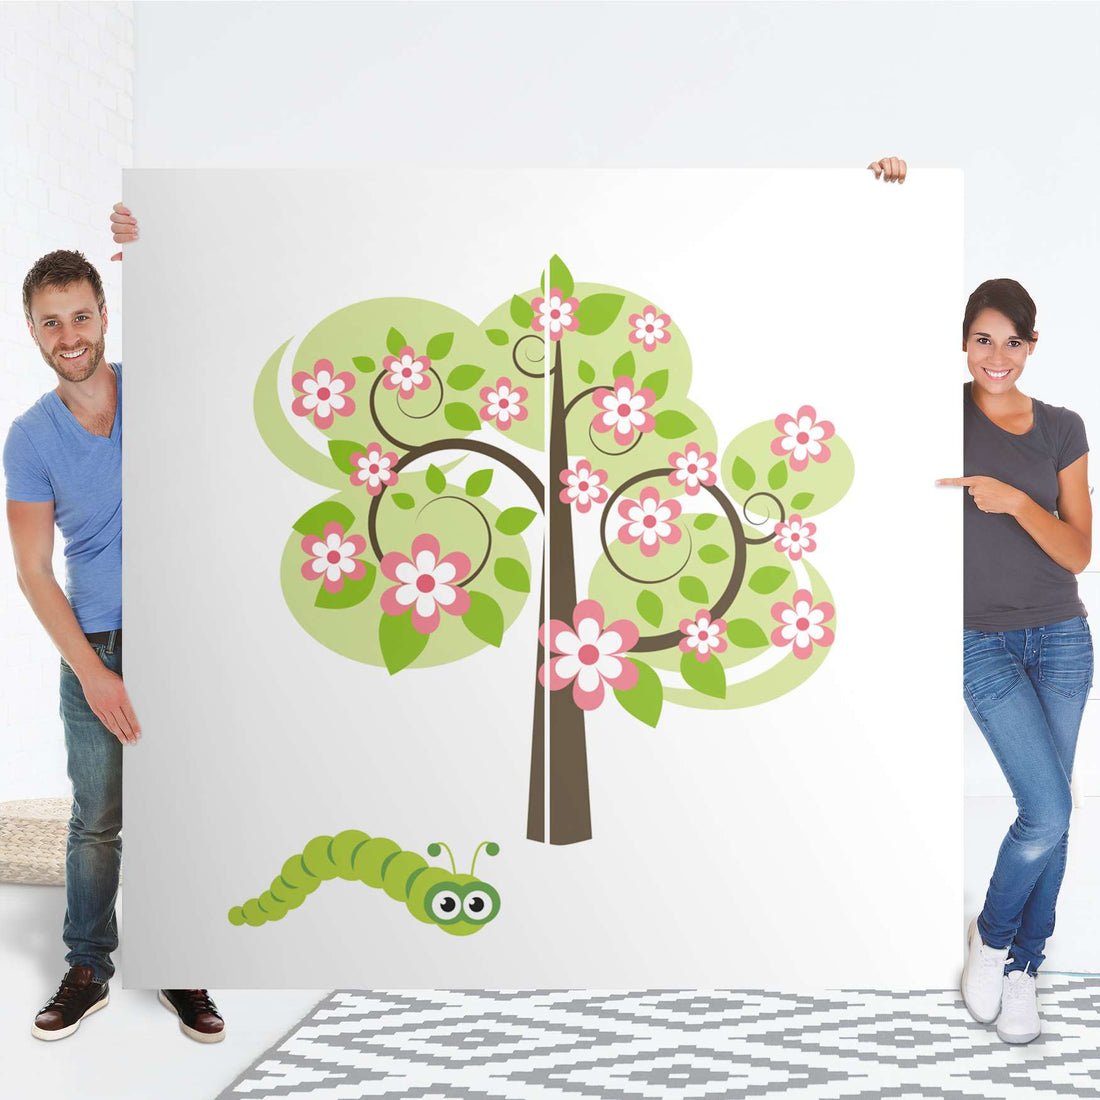 Möbel Klebefolie Blooming Tree - IKEA Pax Schrank 201 cm Höhe - Schiebetür - Folie